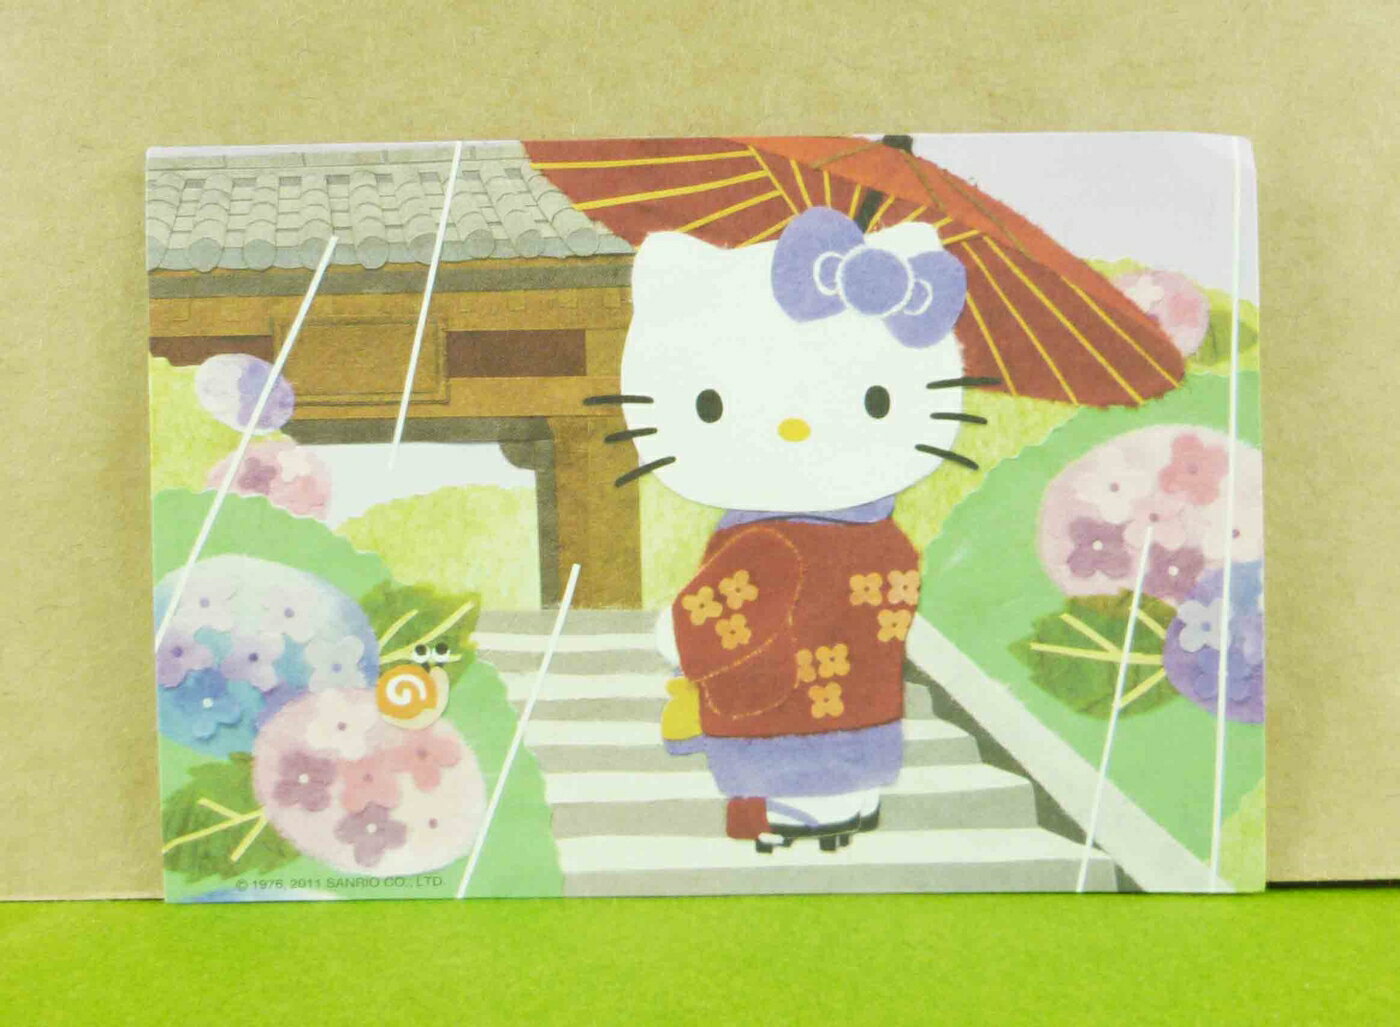 【震撼精品百貨】Hello Kitty 凱蒂貓 造型卡片-雨天 震撼日式精品百貨